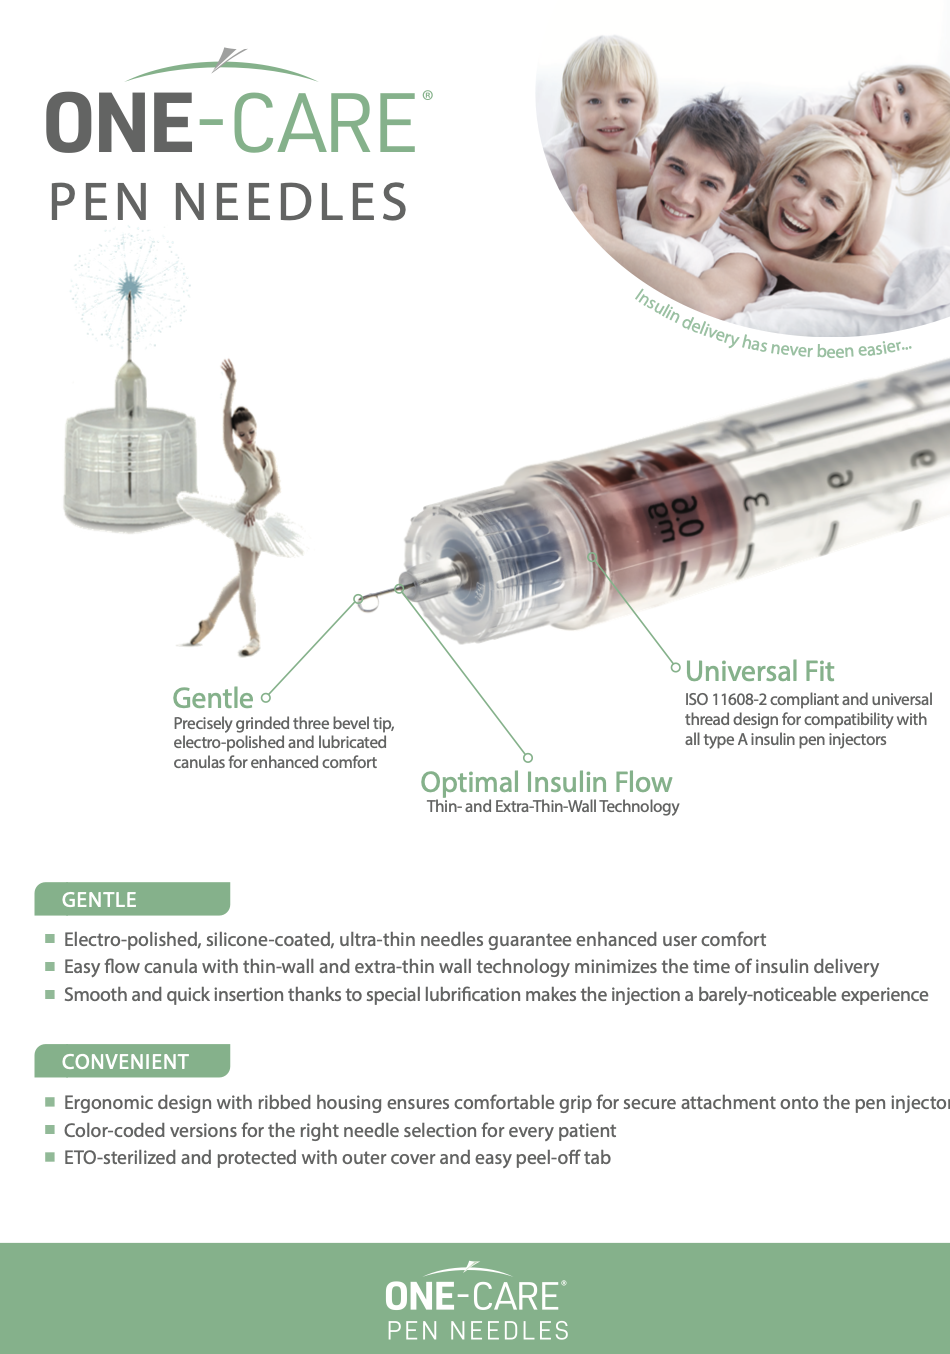 Pen Needles